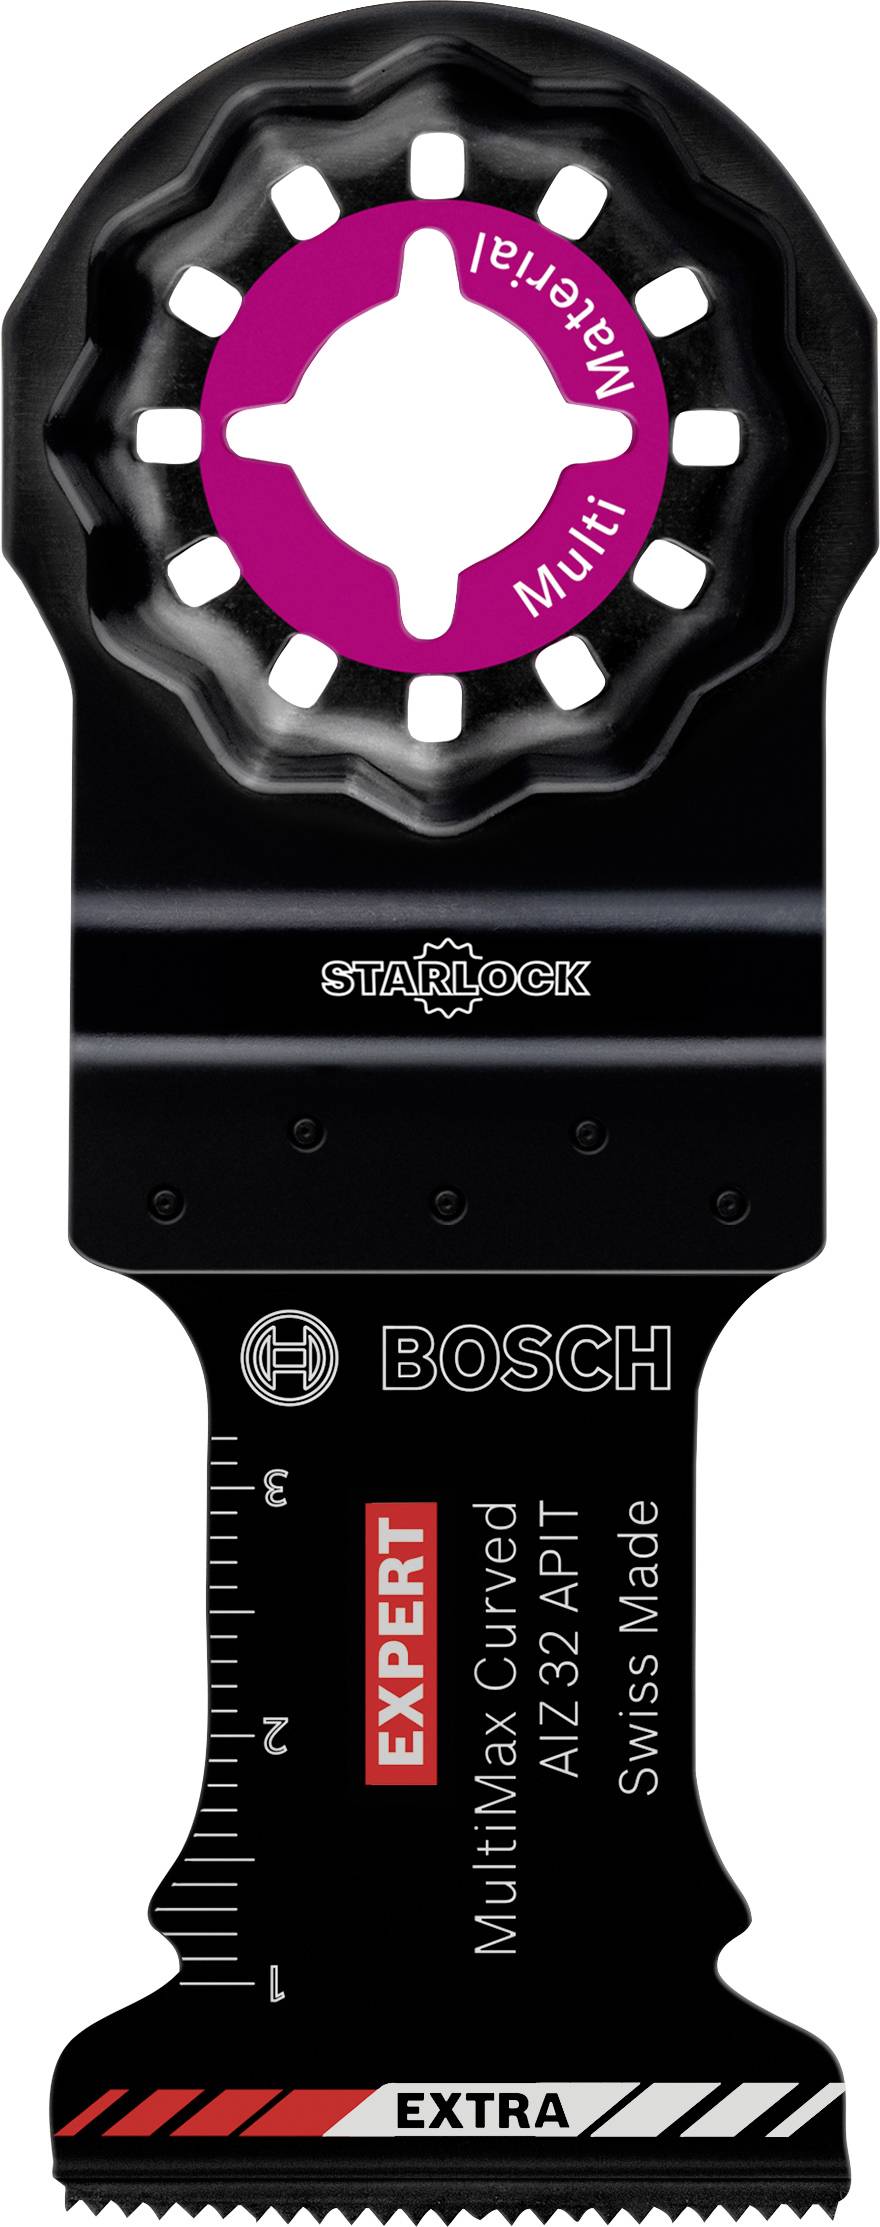 BOSCH EXPERT Starlock Carbide 2608900026 Extra Tauchsägeblatt MultiMaterial